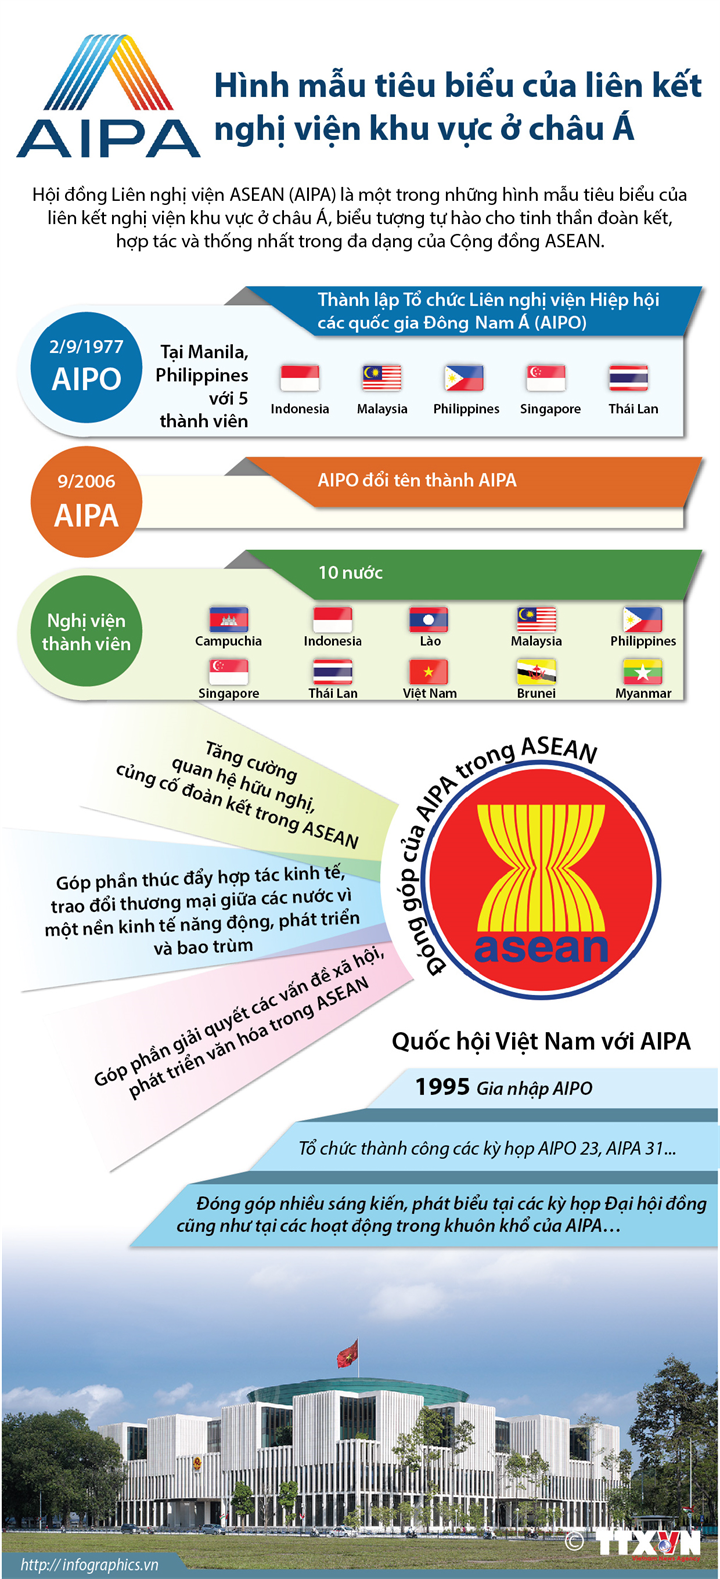 AIPA: Hình mẫu tiêu biểu của liên kết nghị viện khu vực ở châu Á